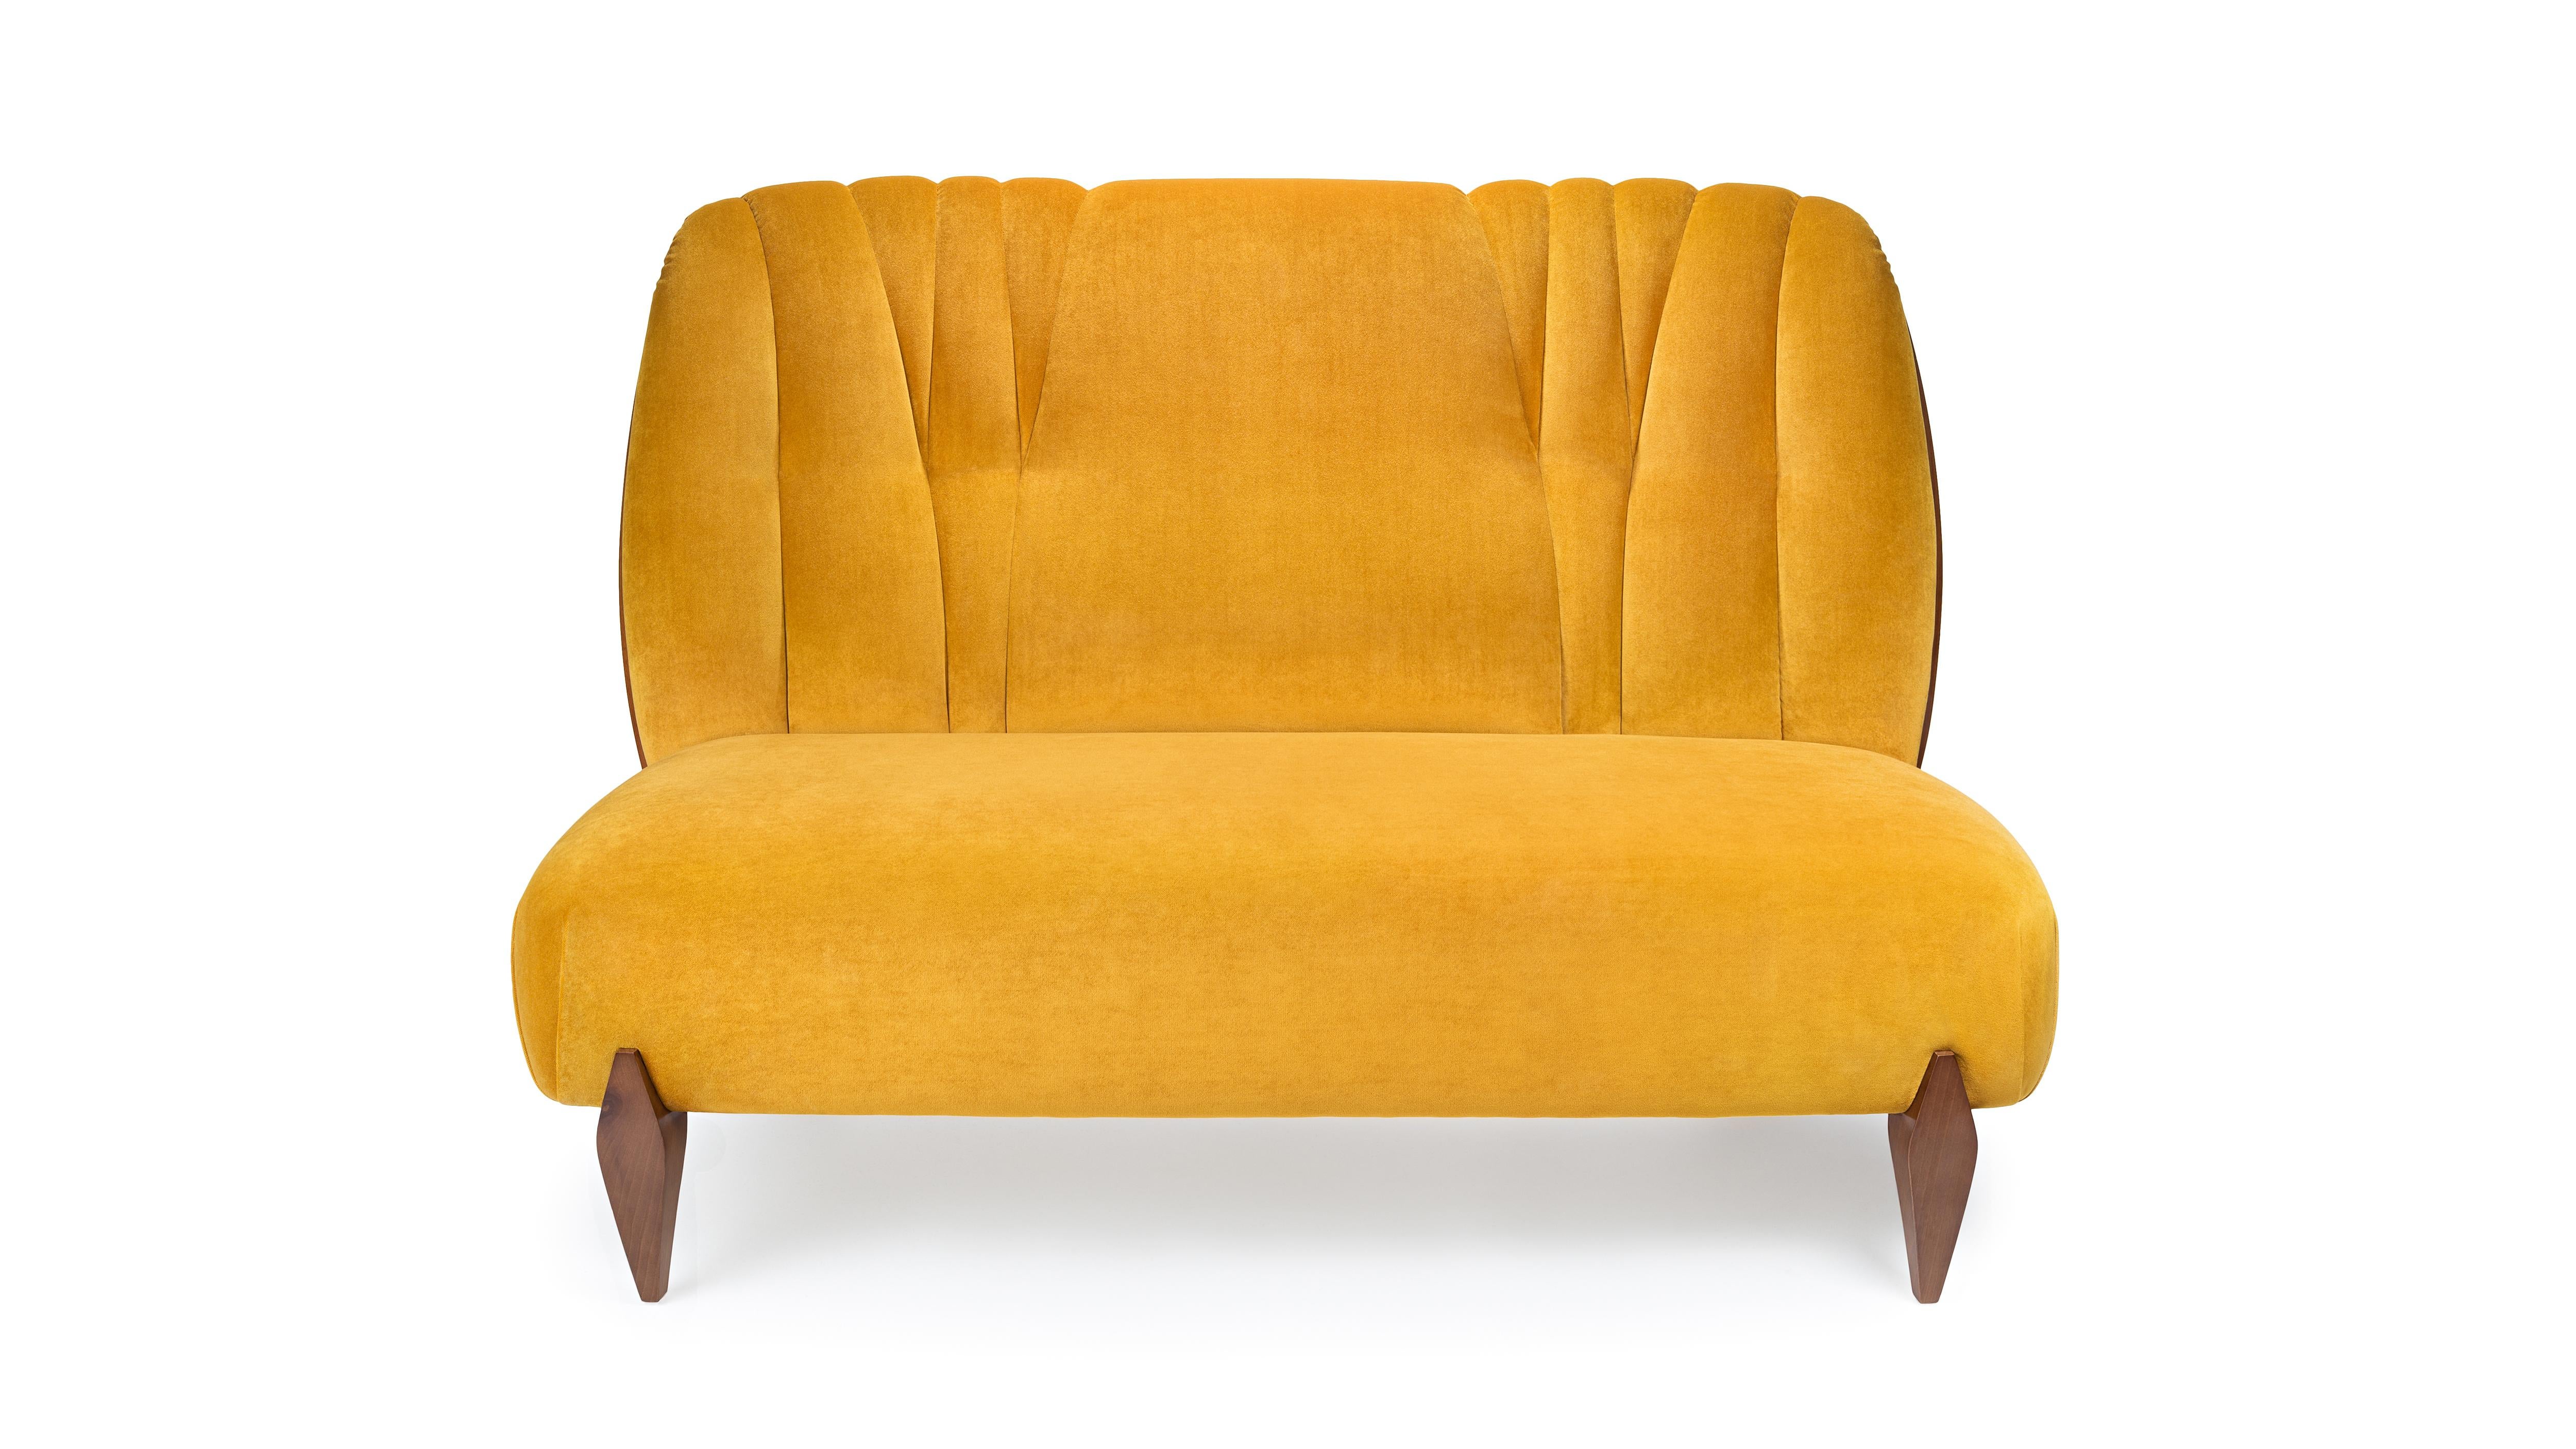 Na Pali 2-Sitz-Sofa von InsidherLand
Abmessungen: T 82 x B 190 x H 95 cm.
MATERIALIEN: Nussbaum, InsidherLand Bright Velvet Ref. Goldener Stoff.
45 kg.
Erhältlich in verschiedenen Stoffen.

Das Na Pali Sofa wurde als Original-Sessel entworfen und